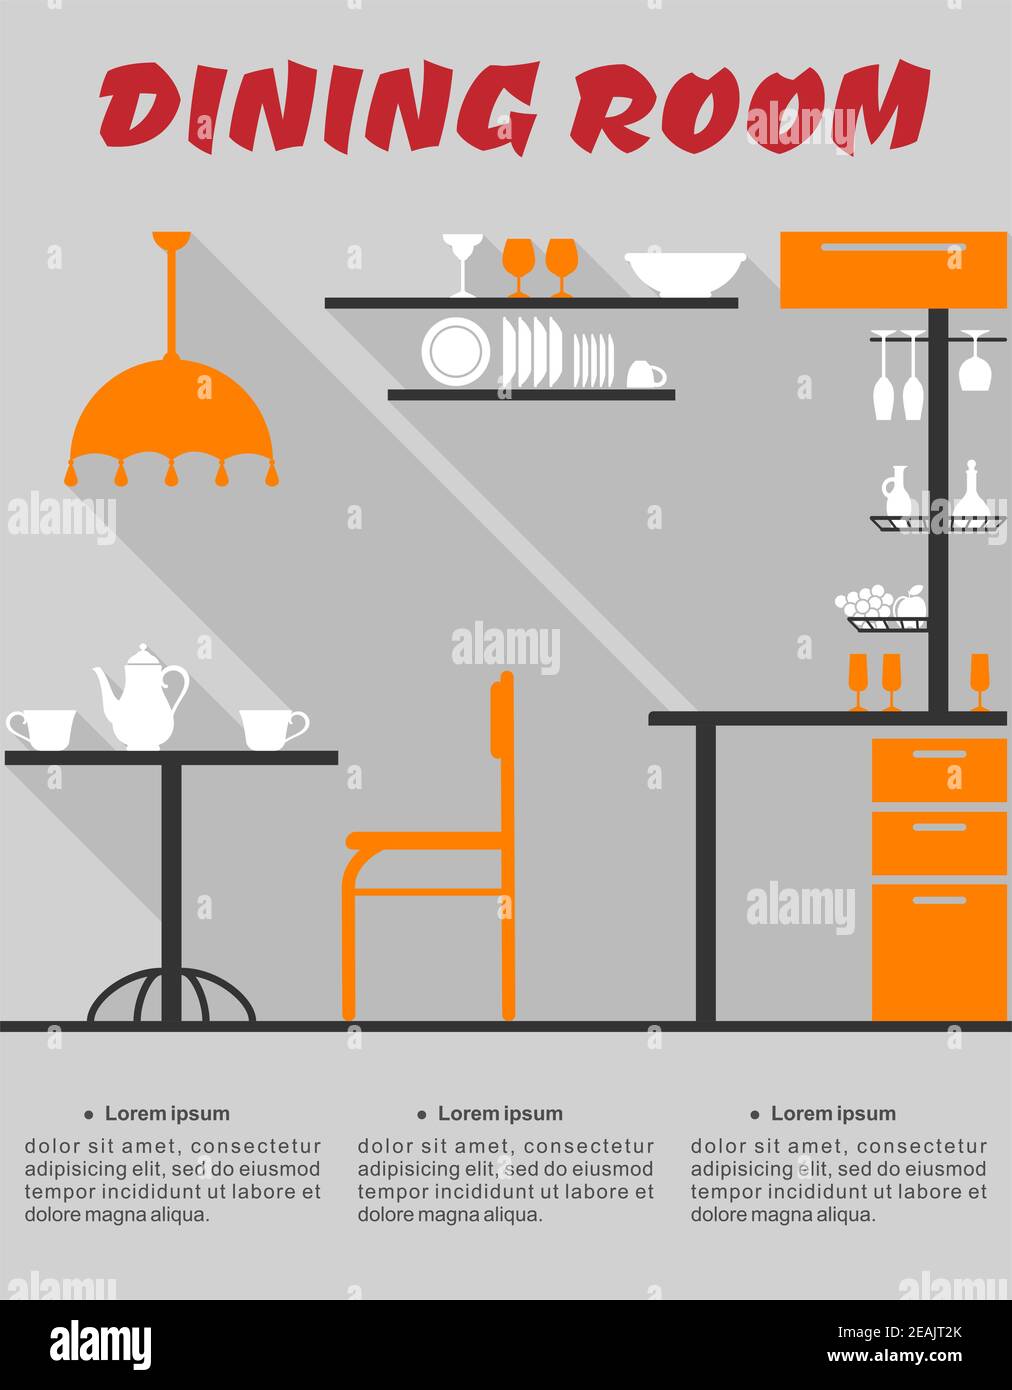 Intérieur au design plat de la salle à manger moderne minimaliste avec bar, chaise, abat-jour, table, étagères, vaisselle et texte salle à manger Illustration de Vecteur